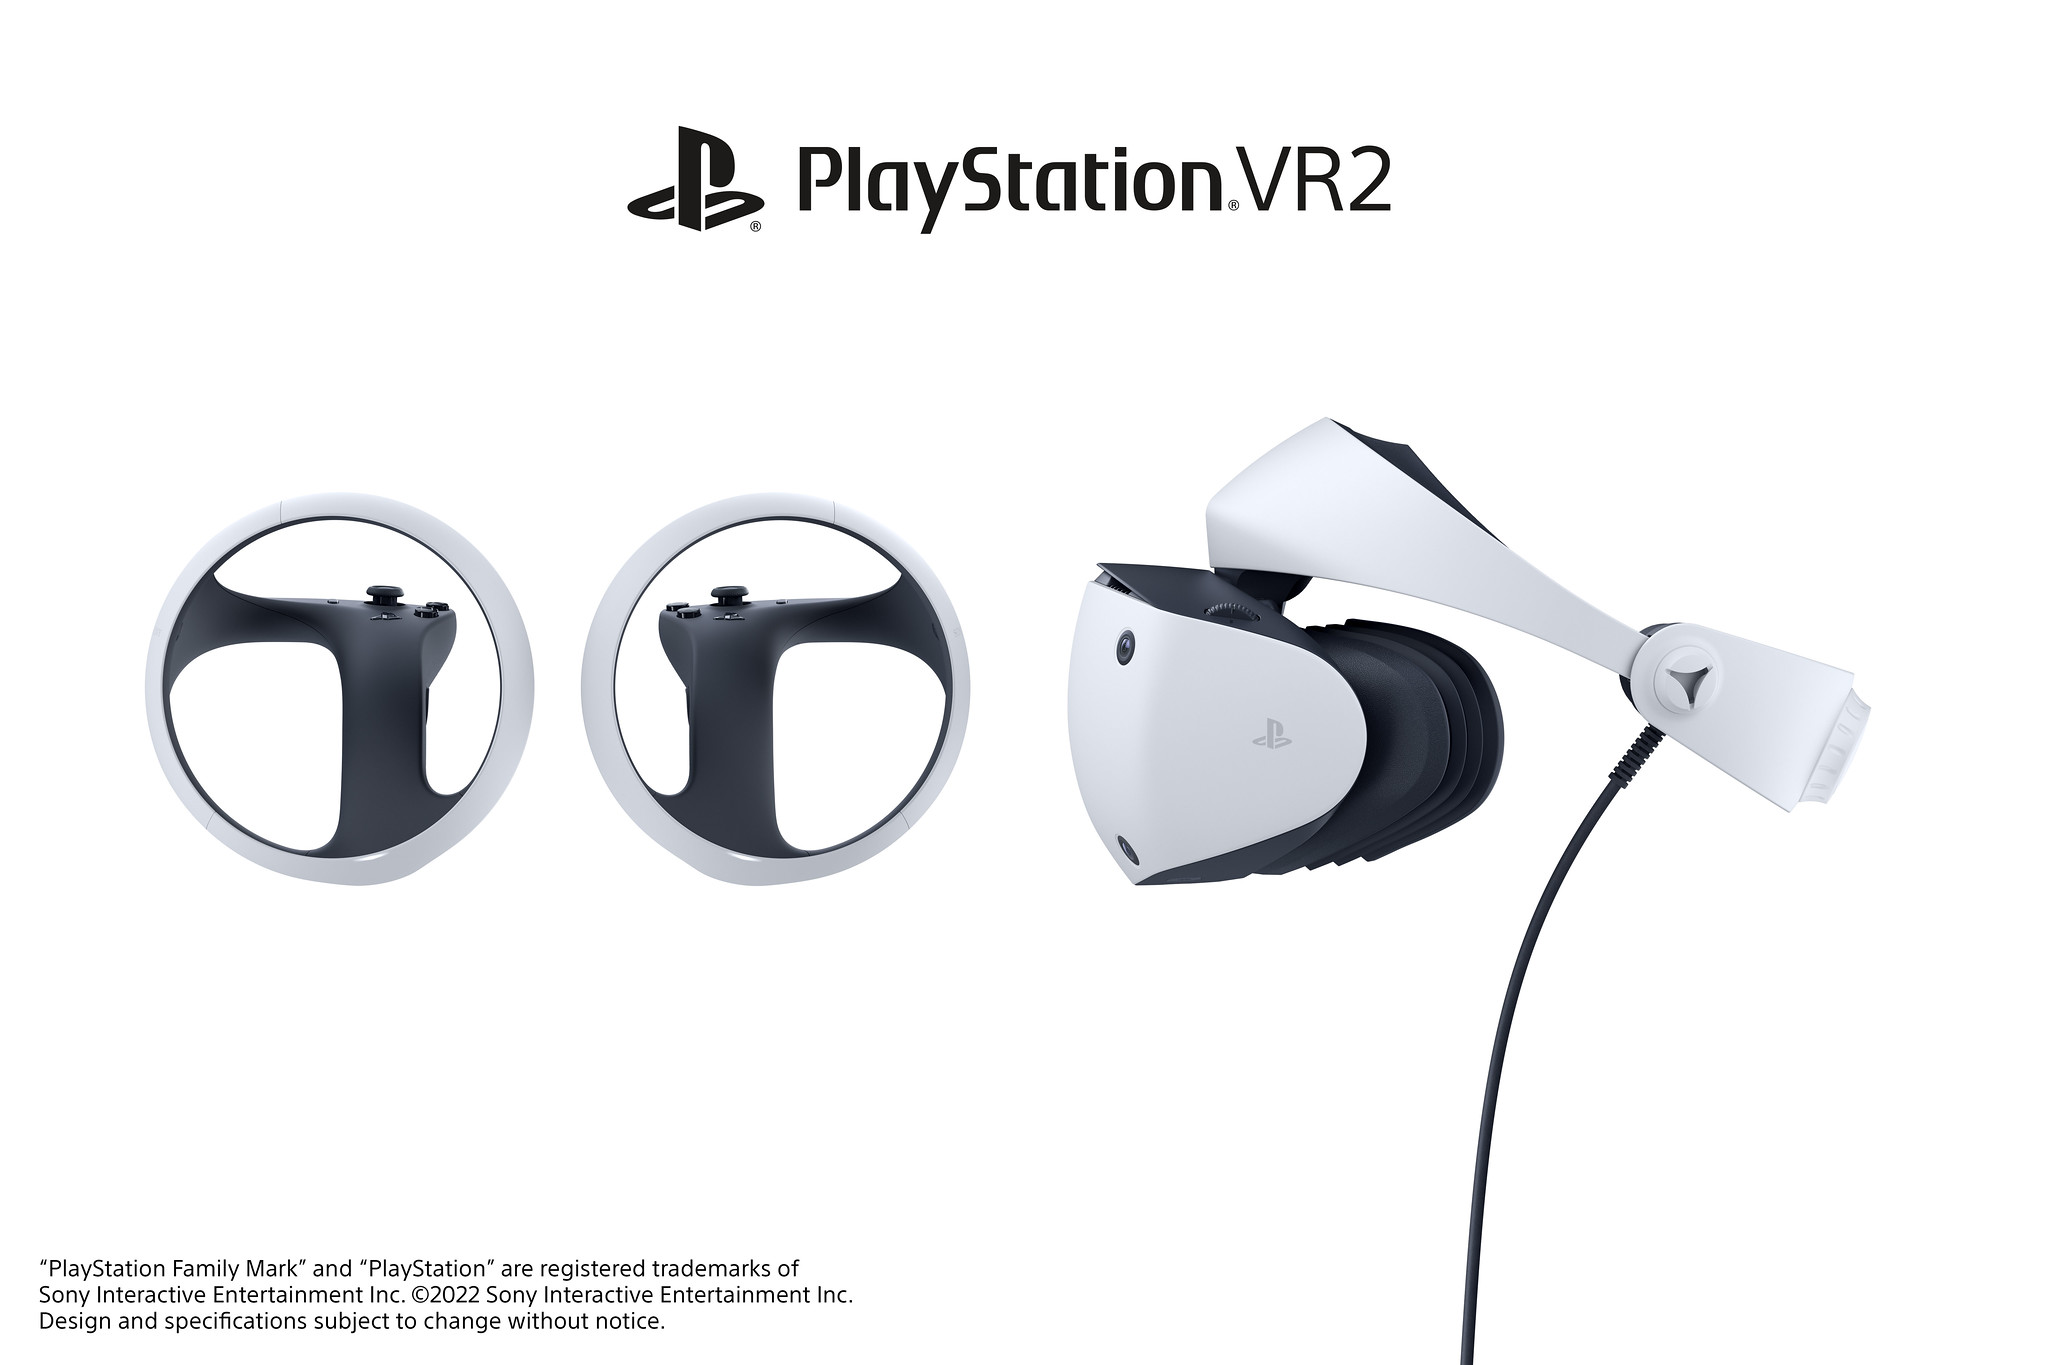 51897391159 f7b9795a07 k - Erster Blick: Headset-Design für PlayStation VR2